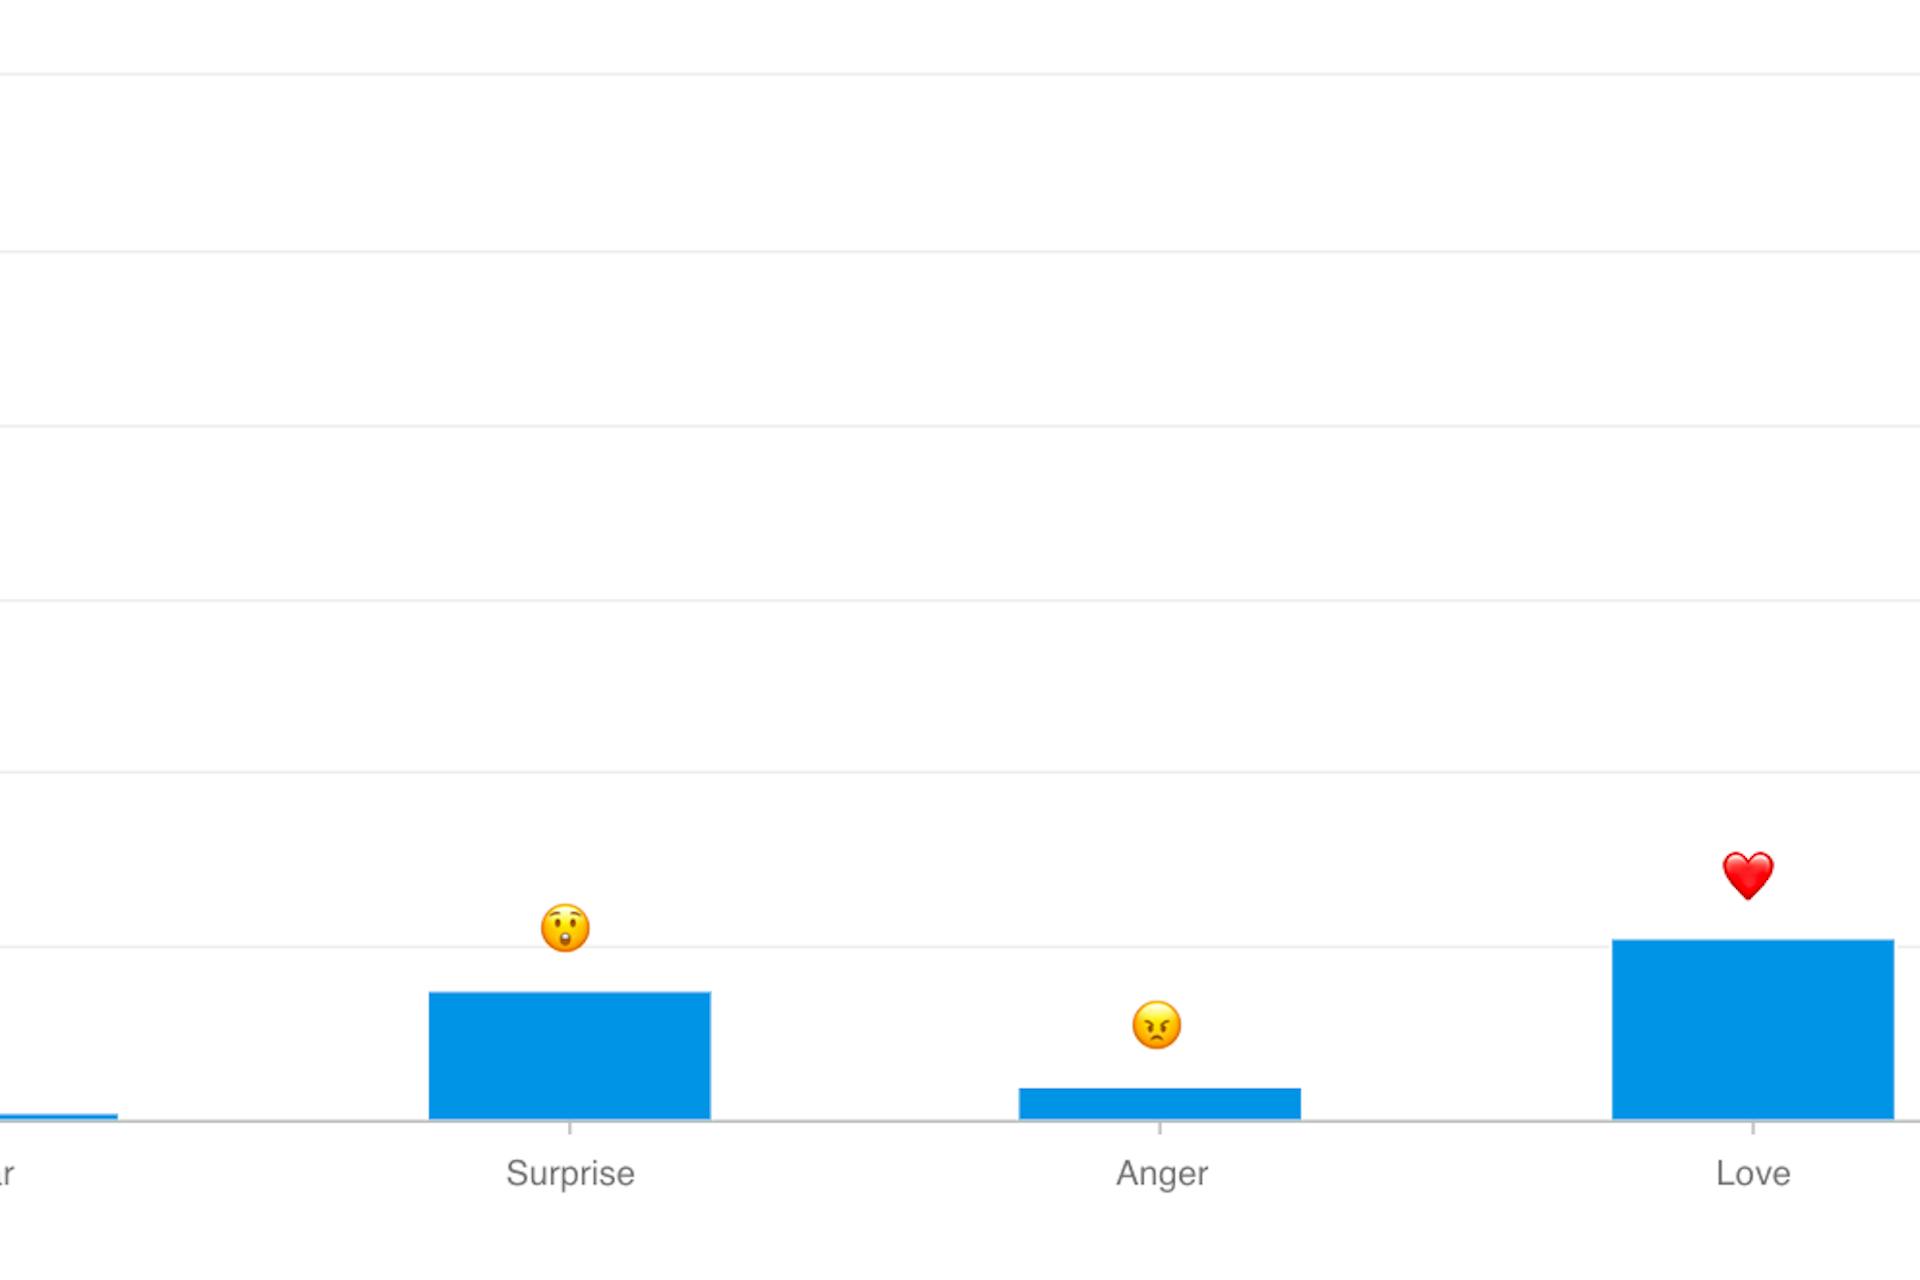 Man sieht einen Screenshot der Meltwater Social Listening Plattform der beliebtesten Emojis